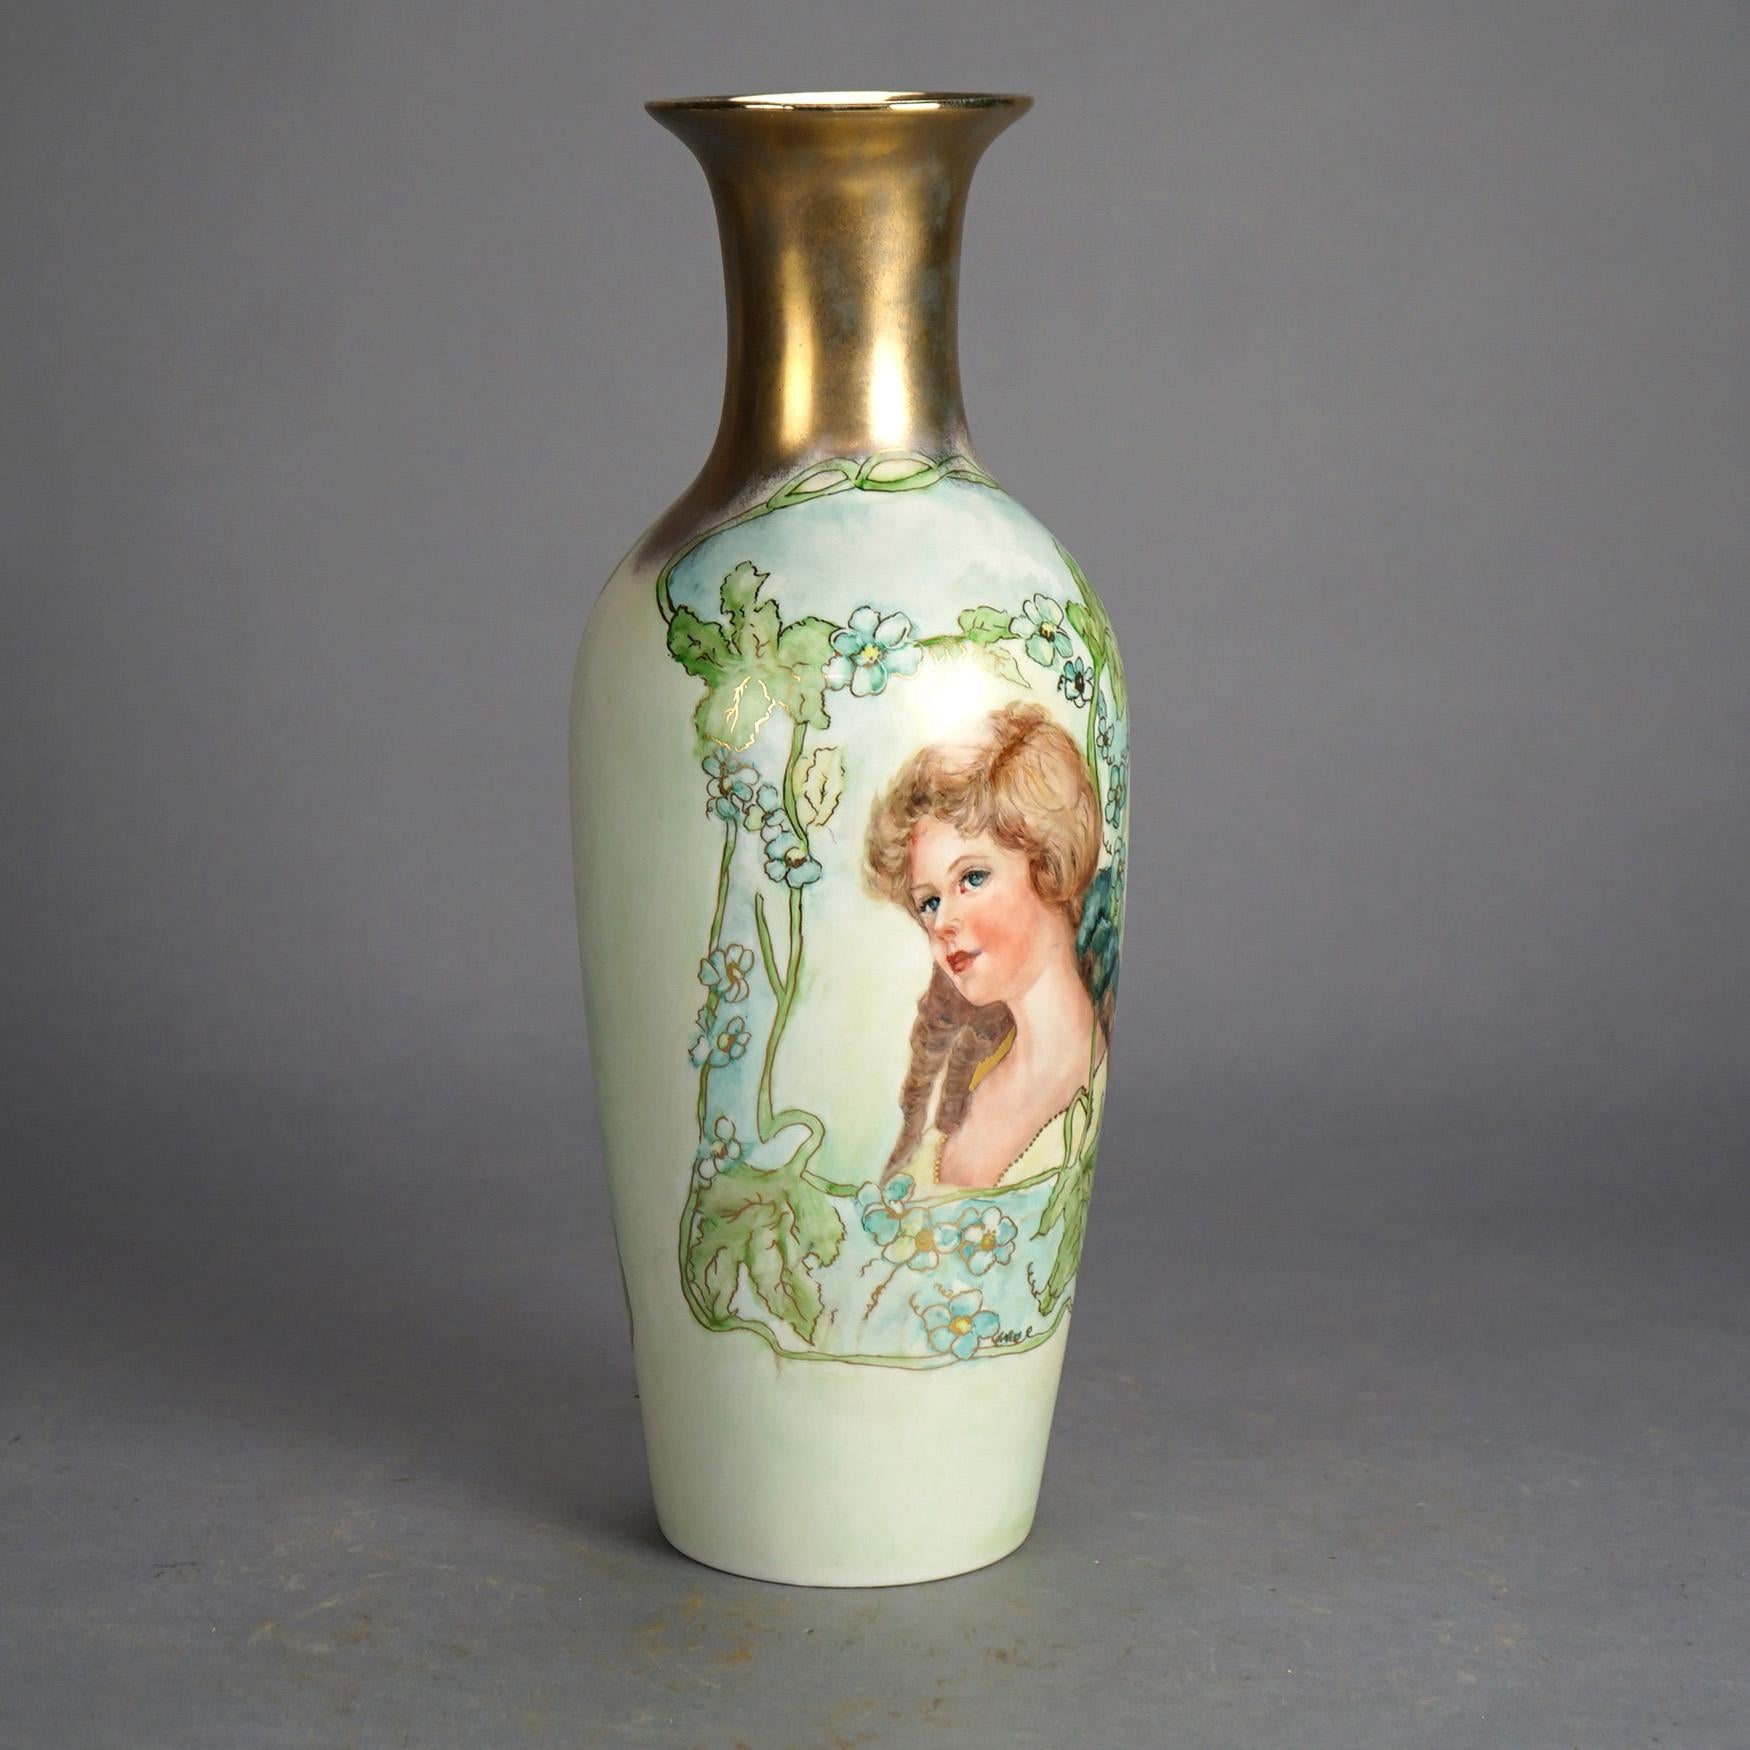 Vase ancien en porcelaine de Limoges peint à la main et doré avec une jeune femme et des fleurs, c1910

Dimensions : 16,75''H x 6''L x 6''P